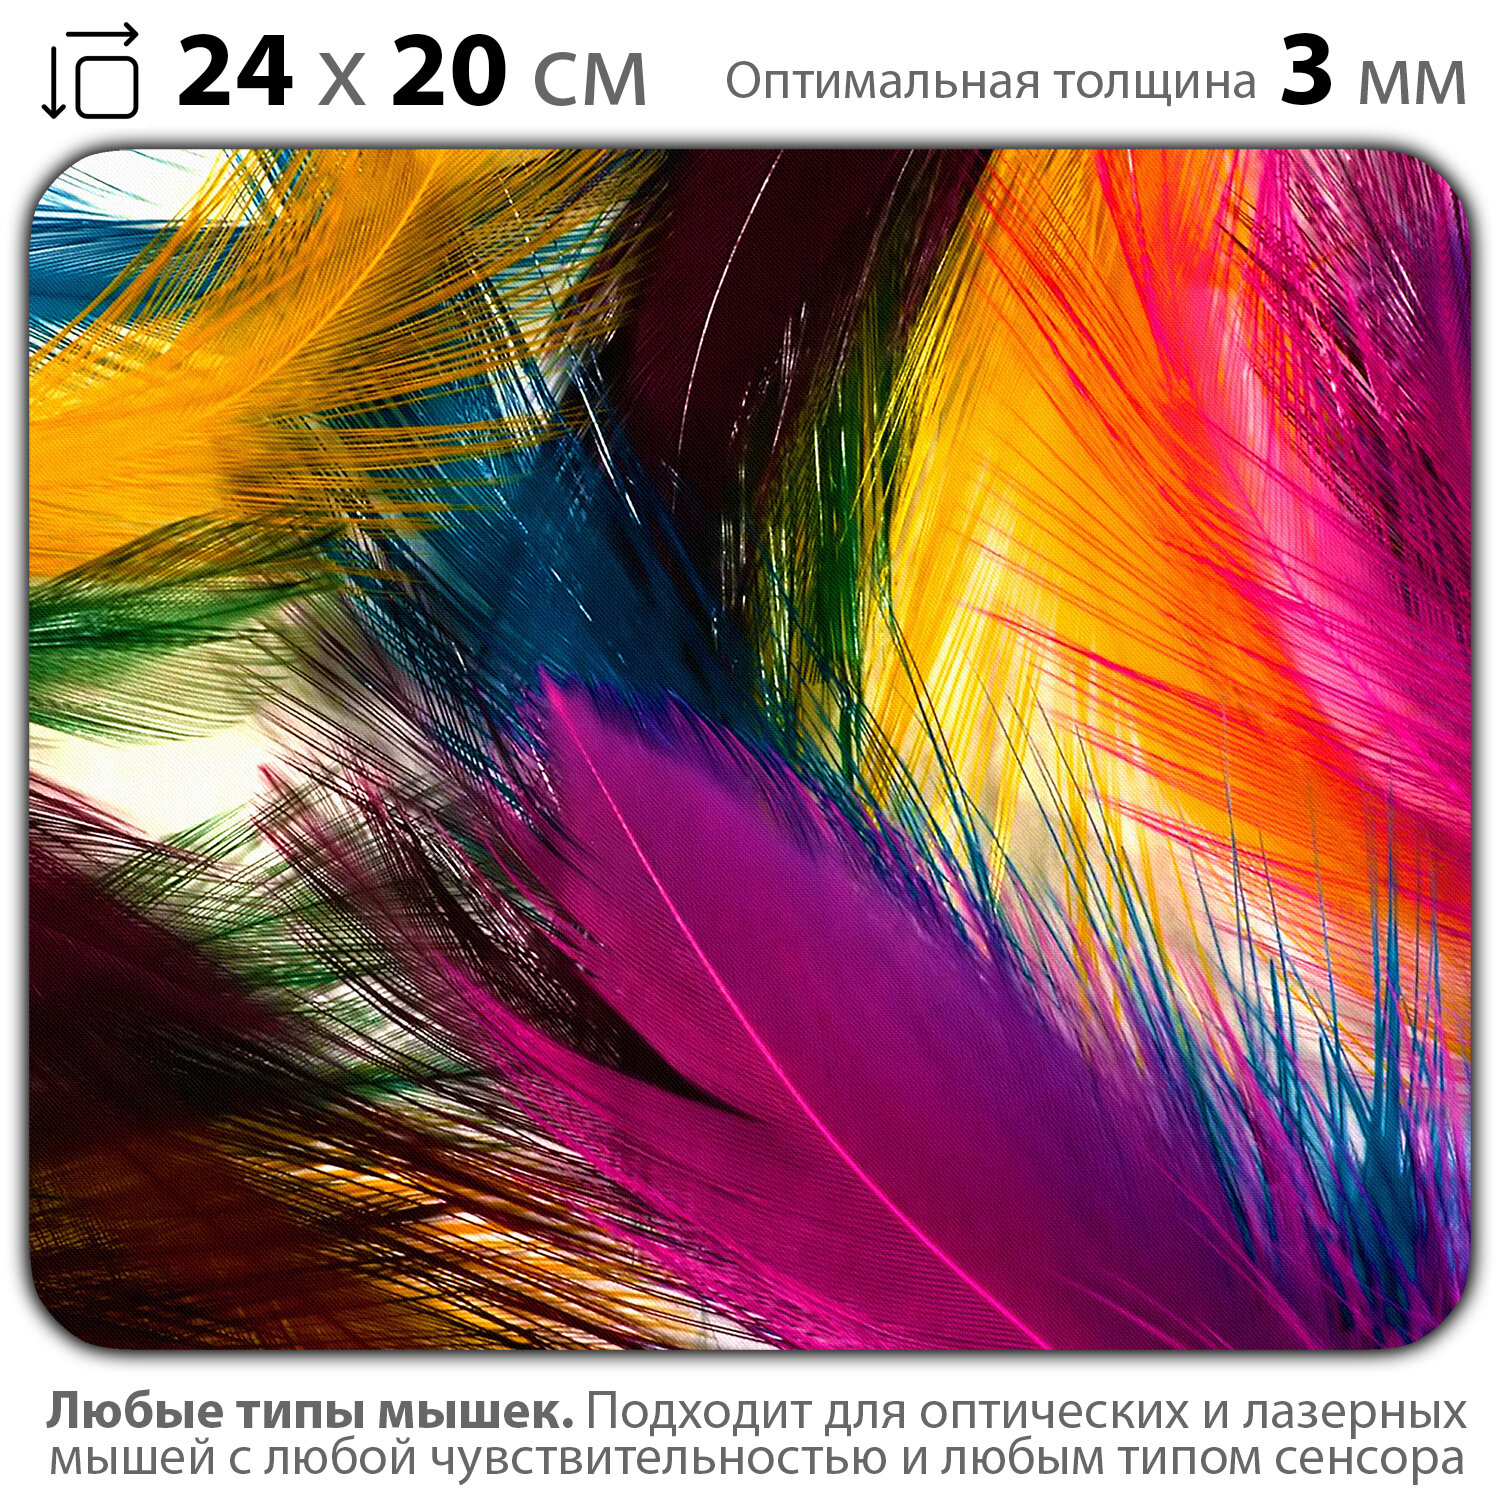 Коврик для мыши "Разноцветные перья" (24 x 20 см x 3 мм)